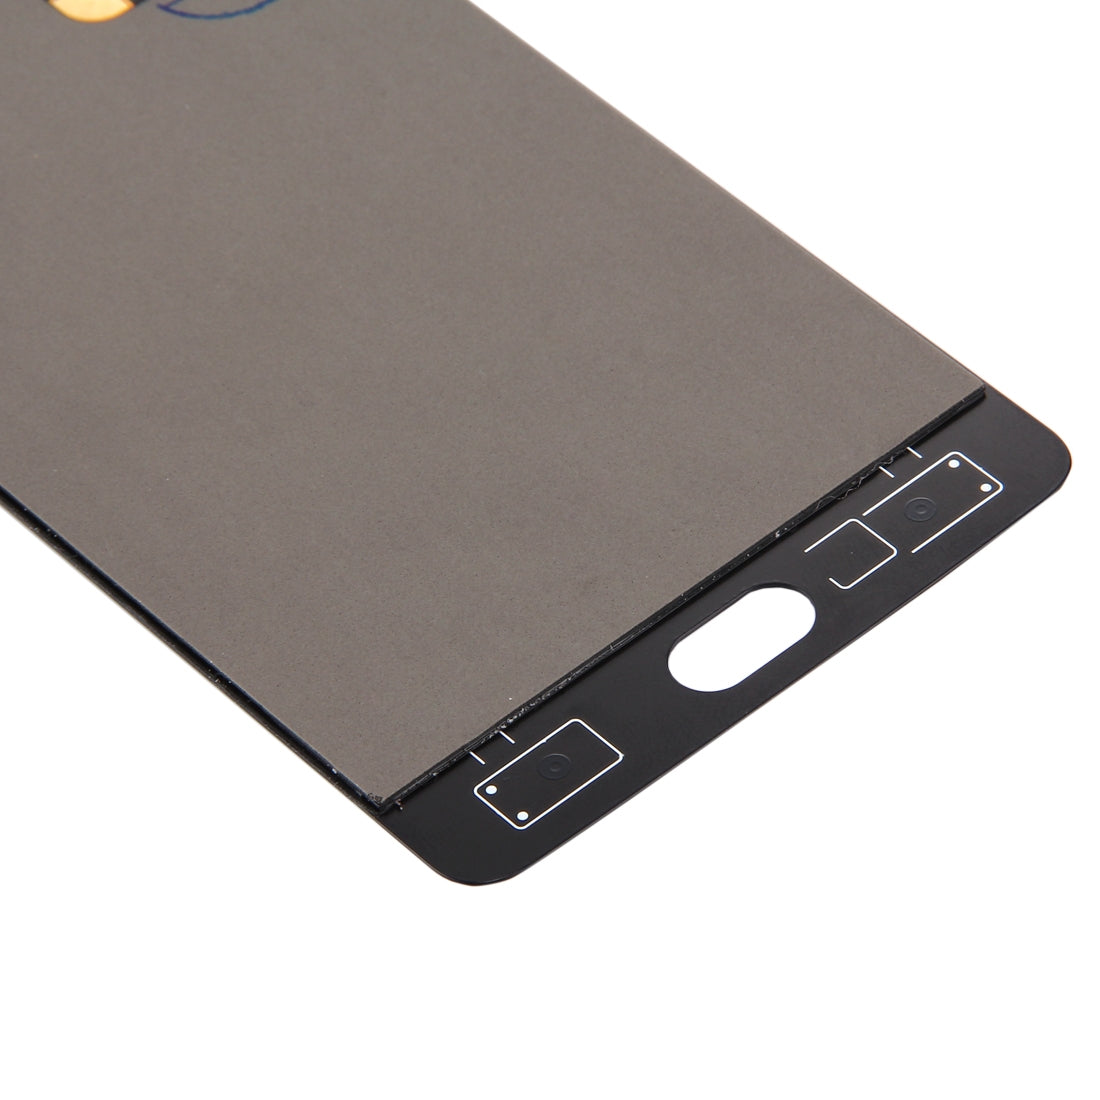 Ecran LCD + Vitre Tactile OnePlus 3 (Version A3003) Noir